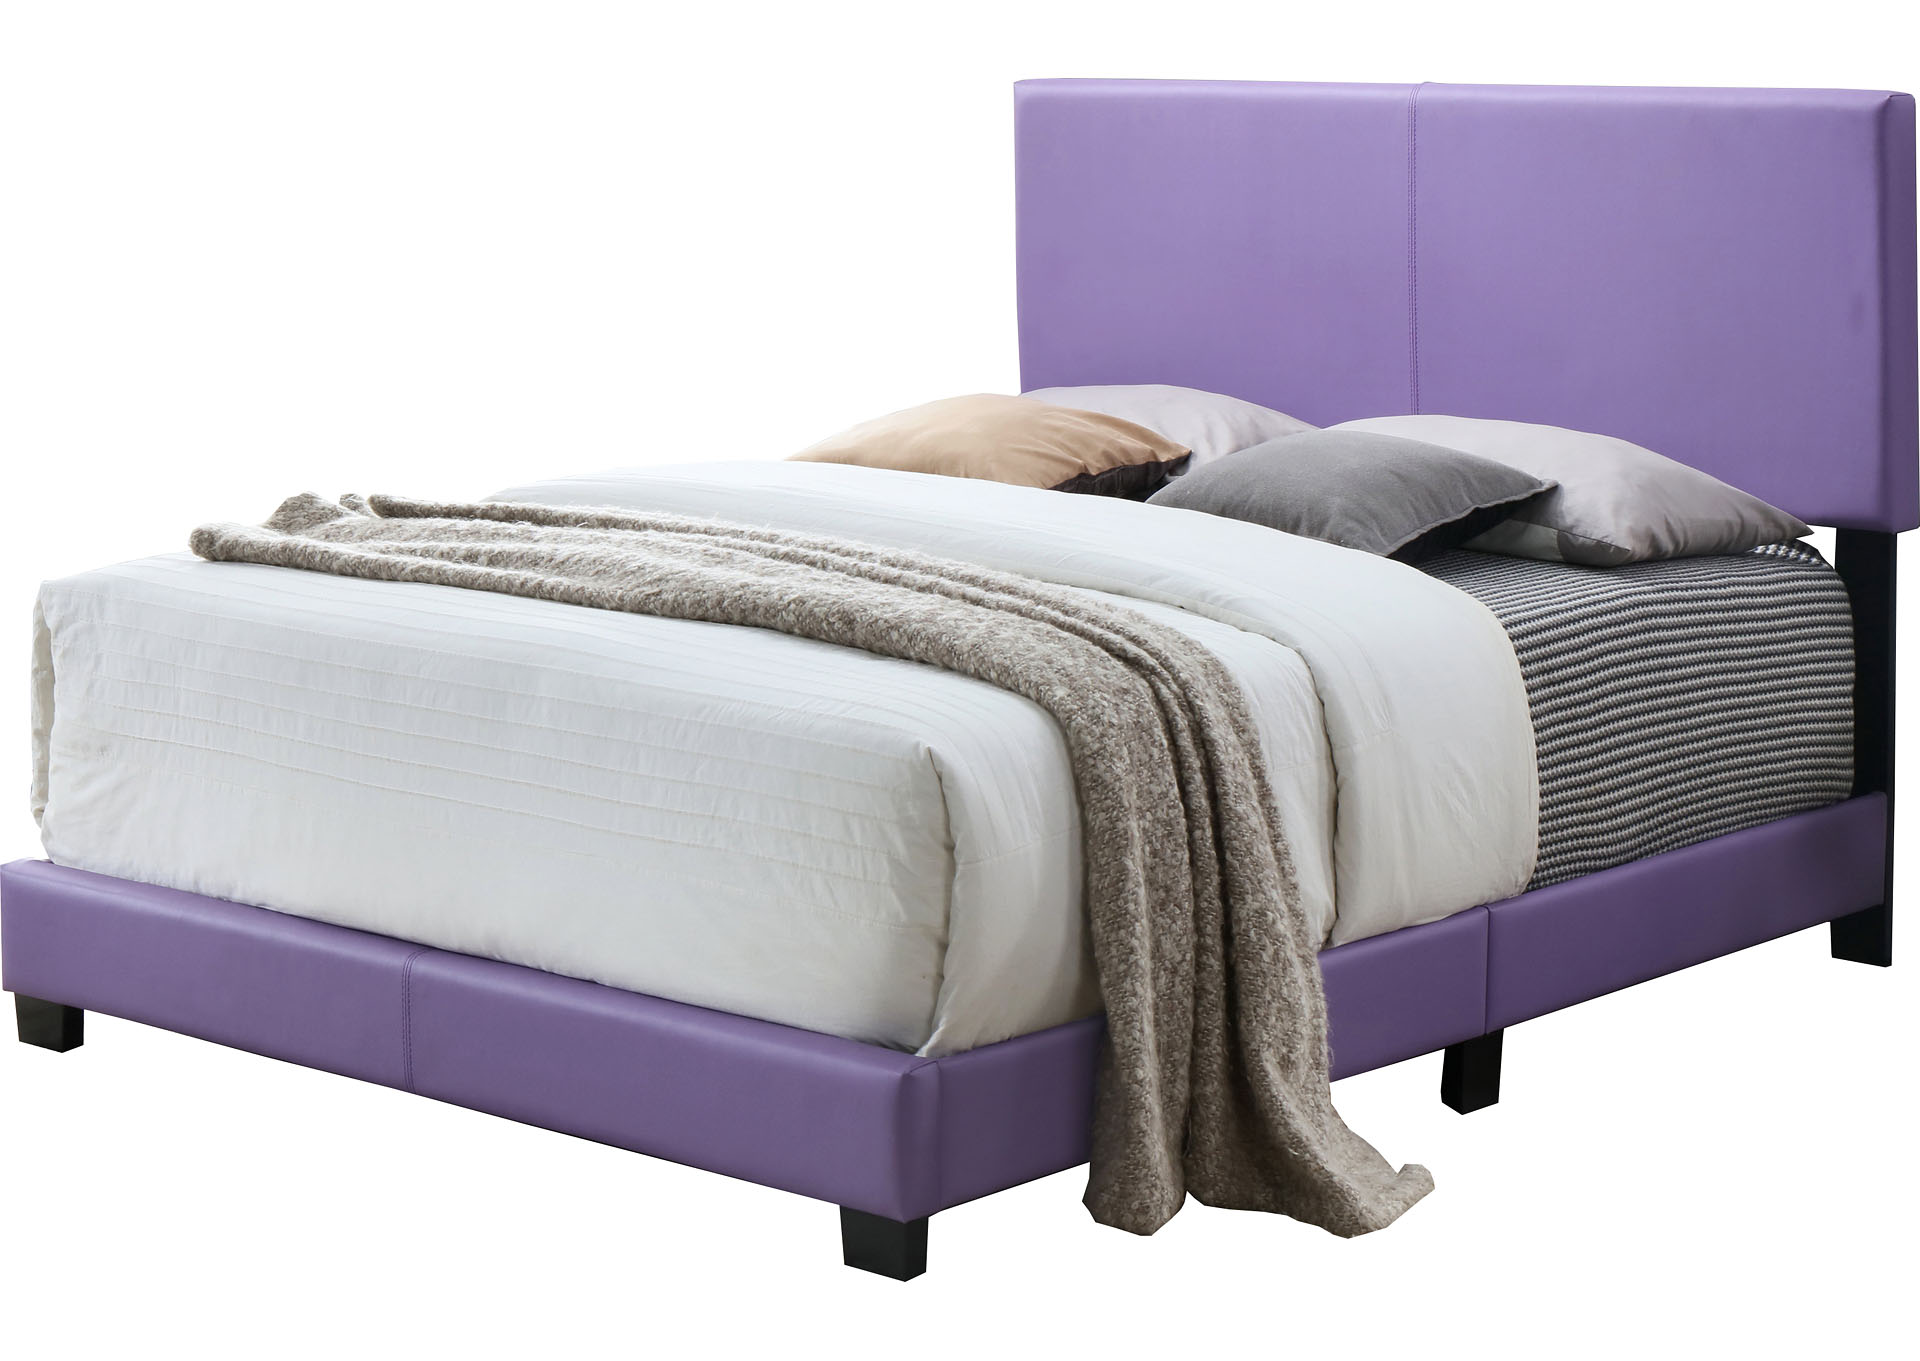 Xander Purple Twin Bed,Titanic Furniture